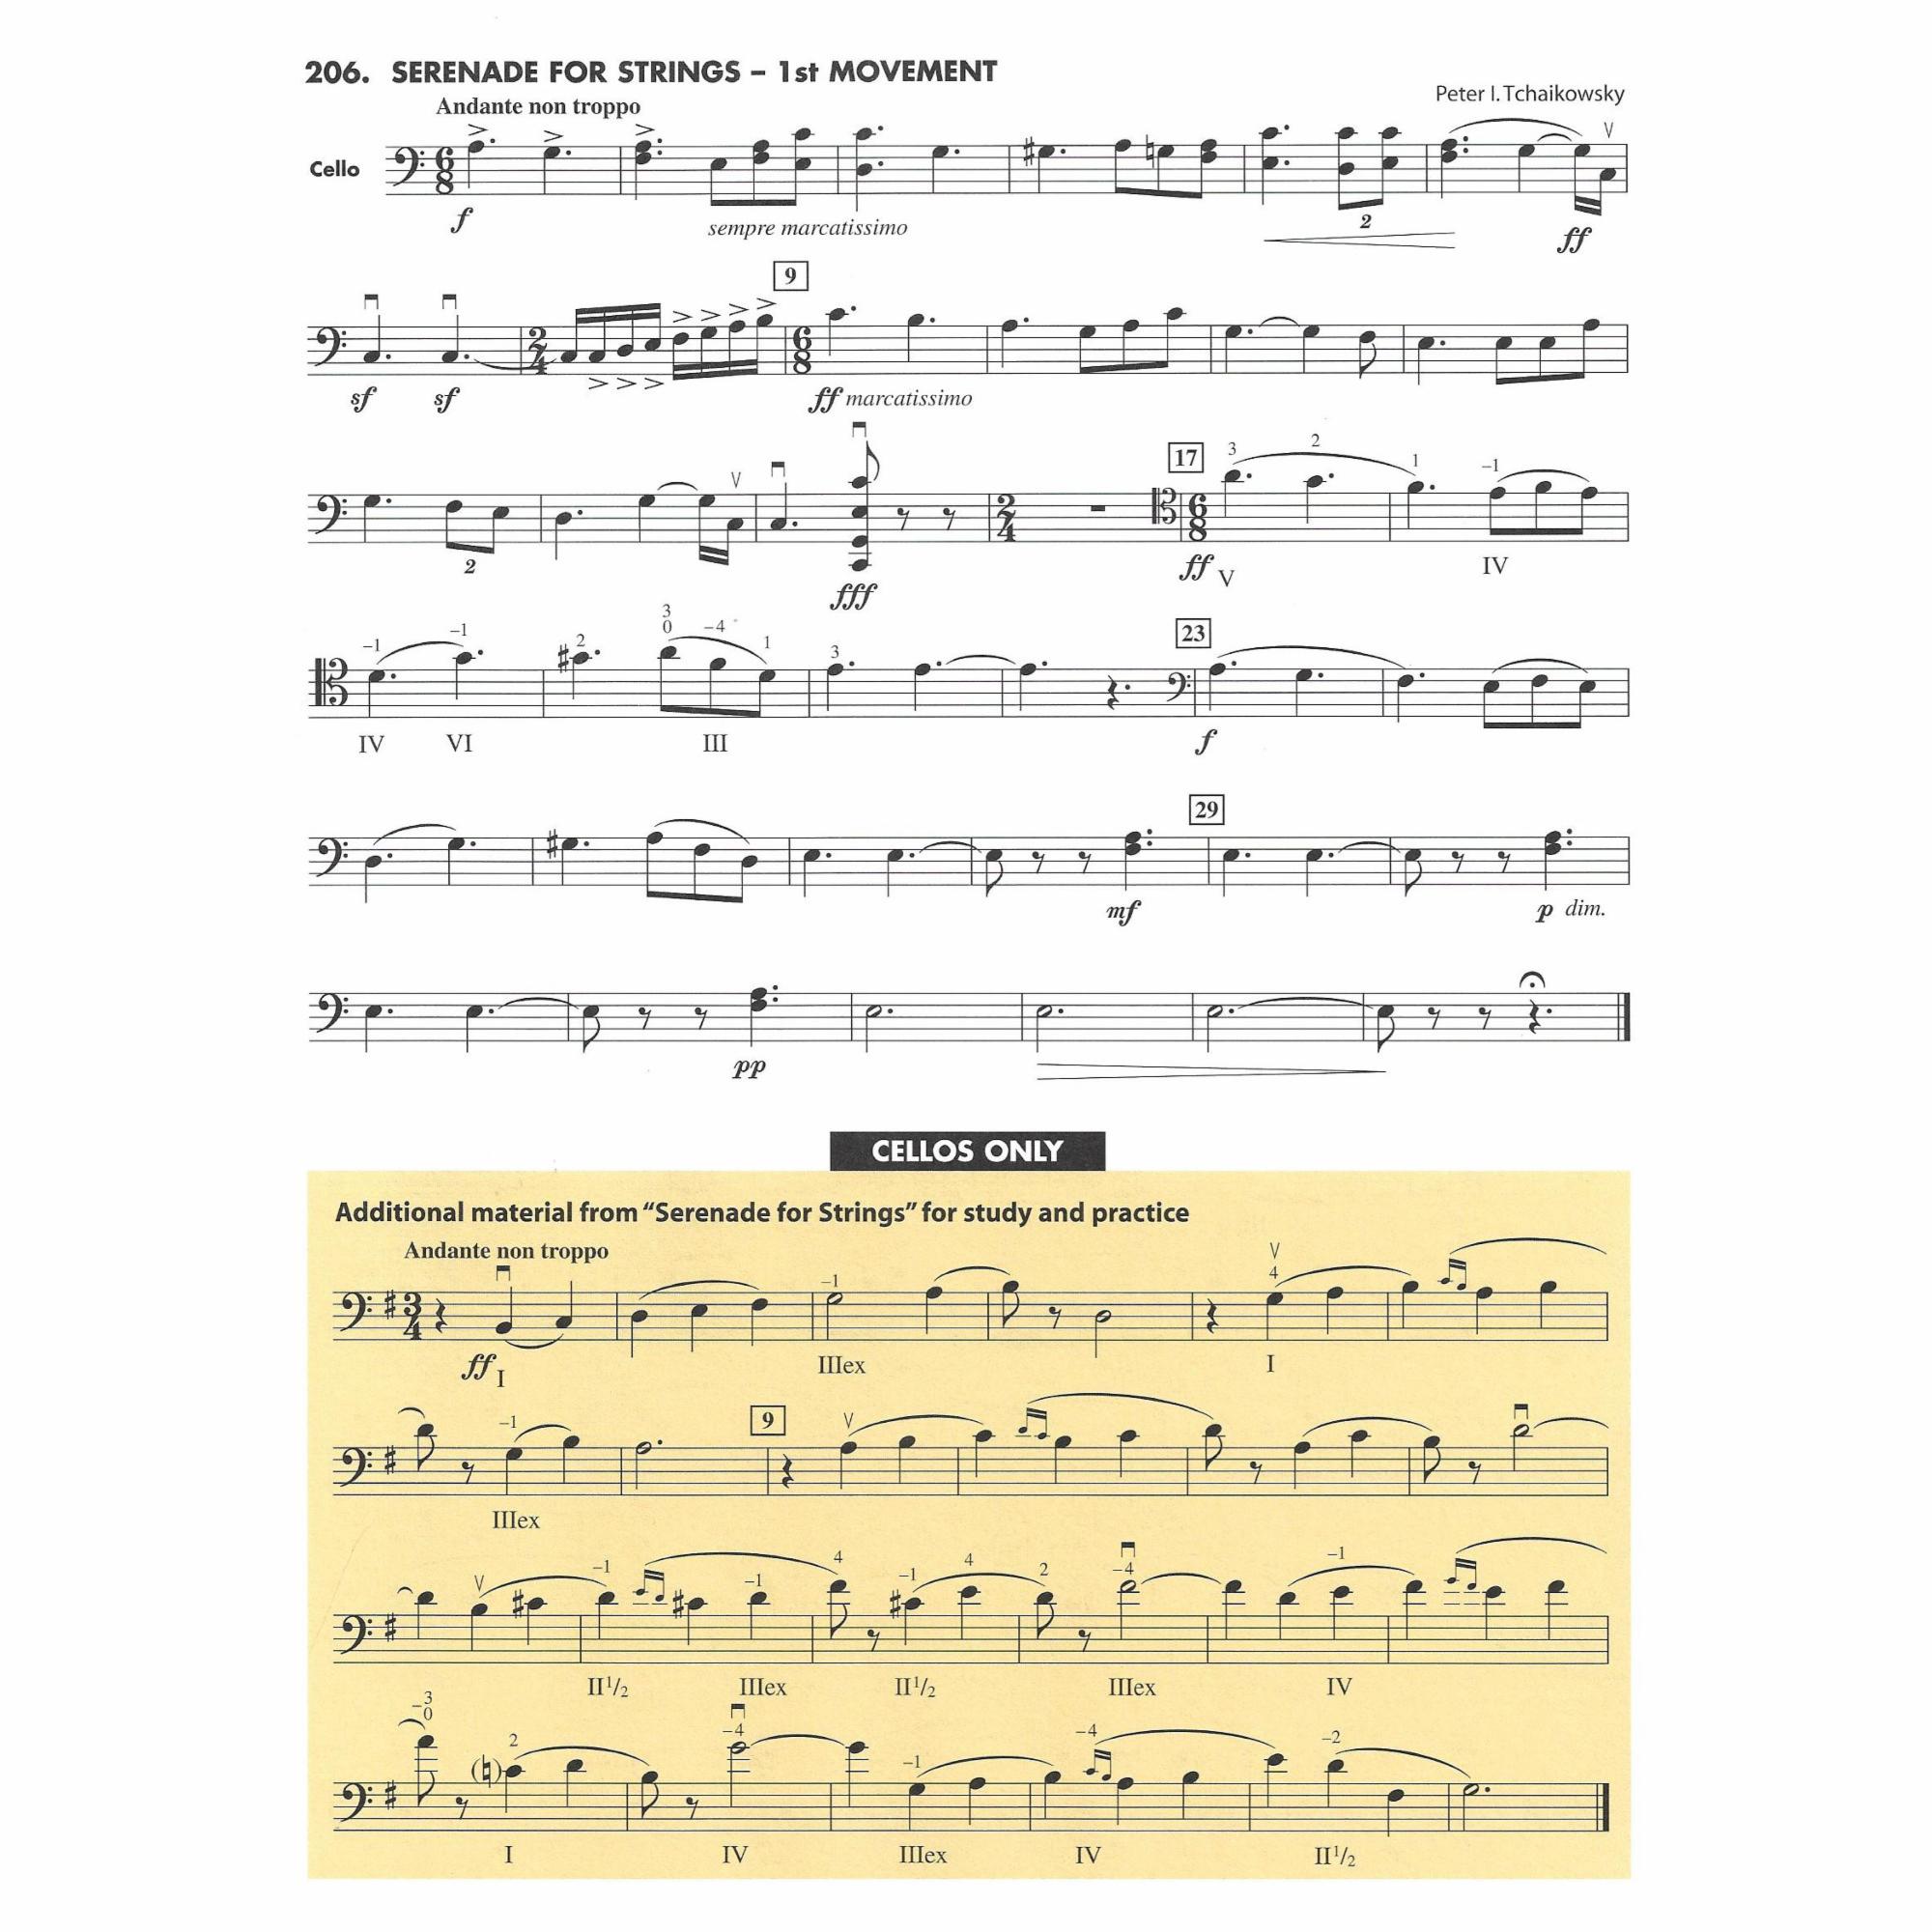 Sample: Cello (Pg. 47)